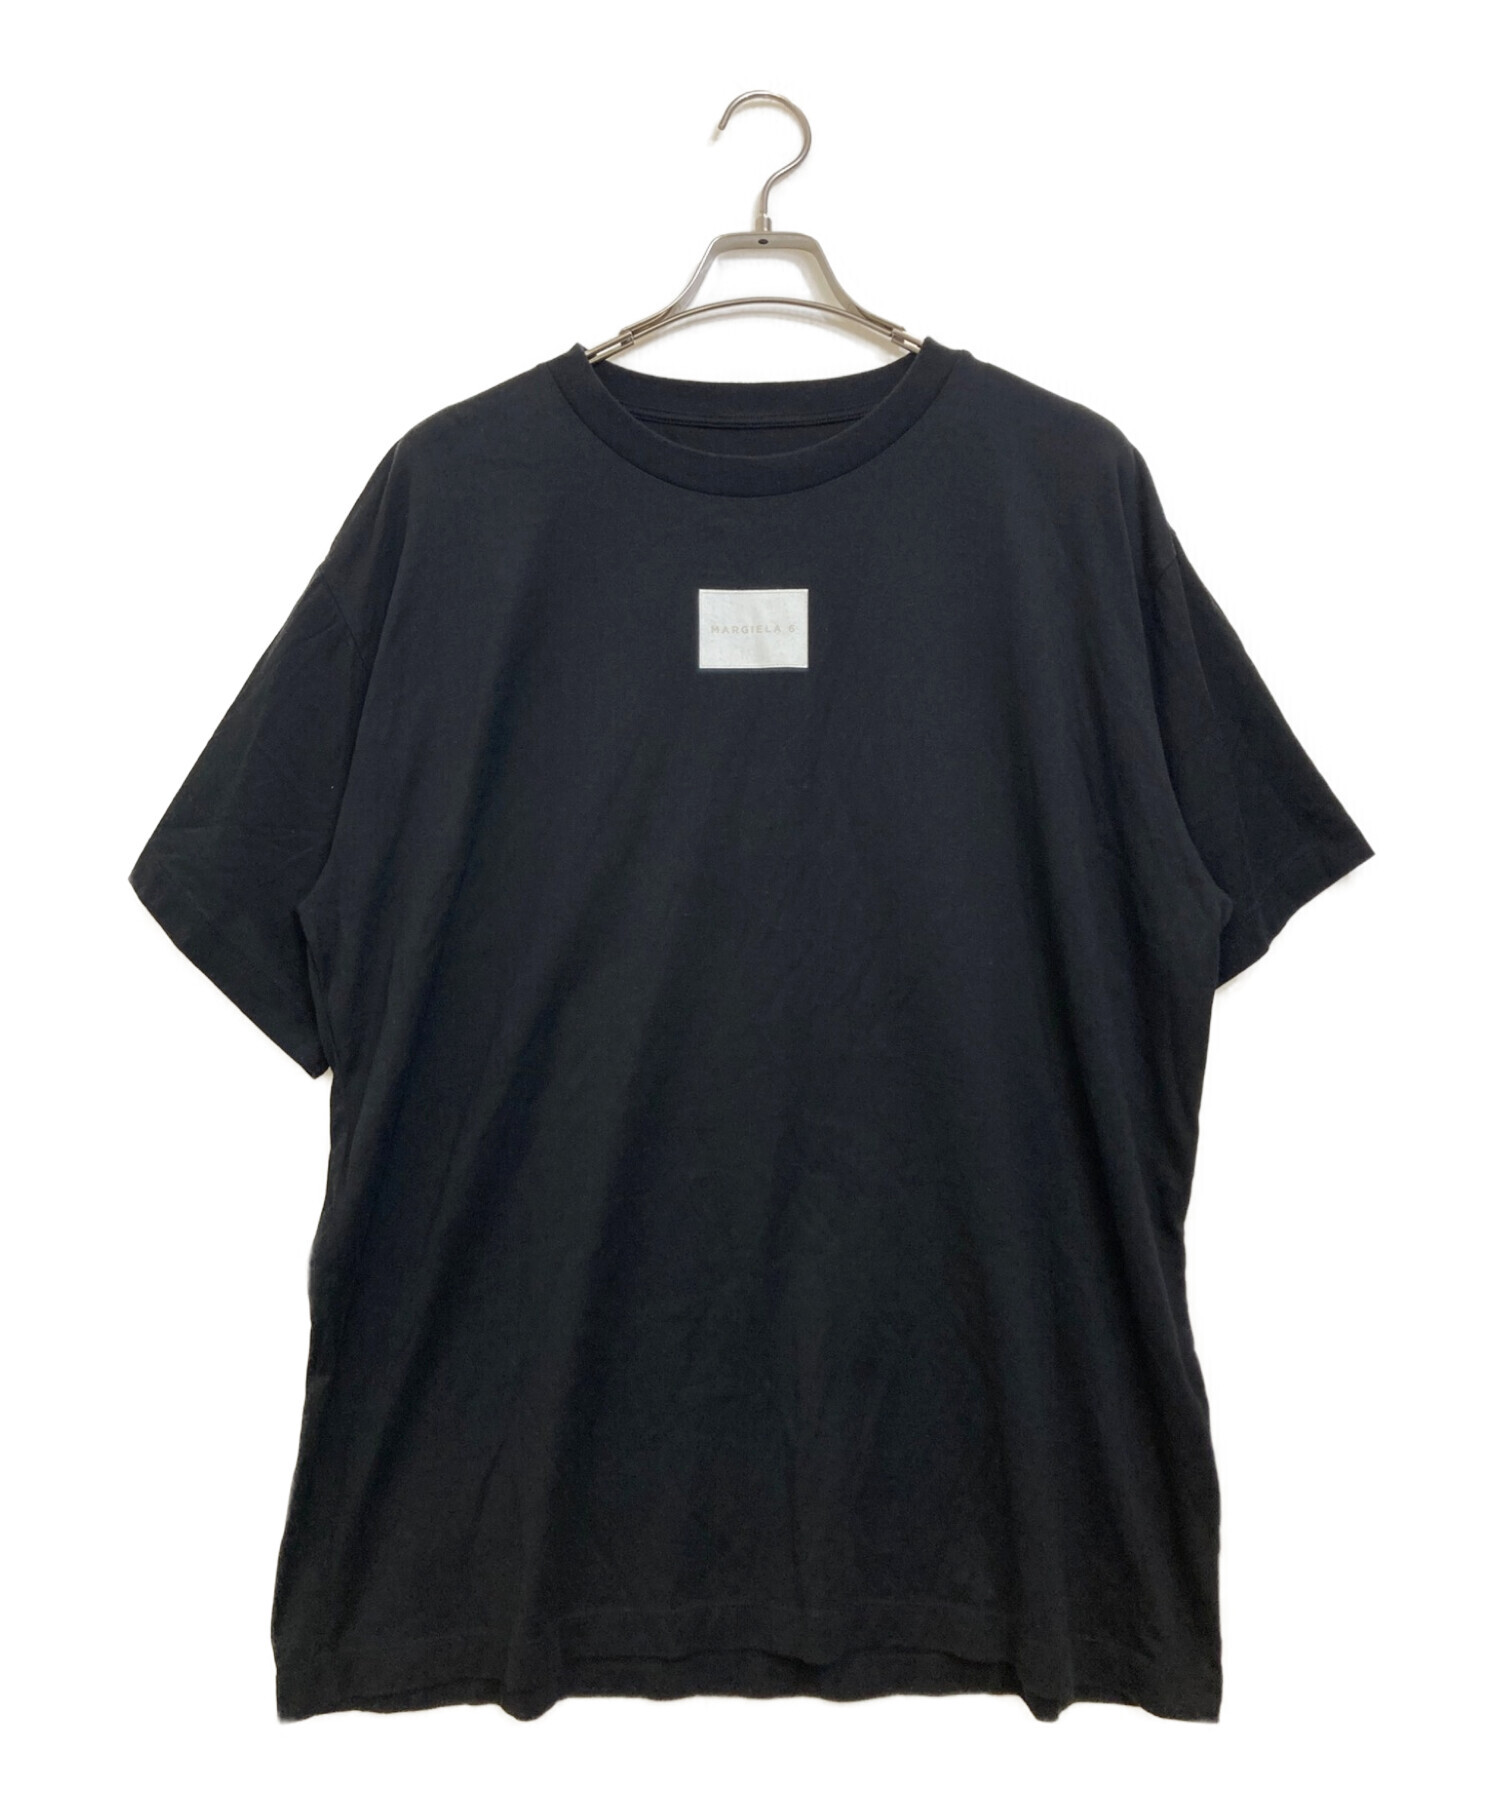 MM6 Maison Margiela (エムエムシックス メゾンマルジェラ) Margiela 6プリントTシャツ ブラック サイズ:M